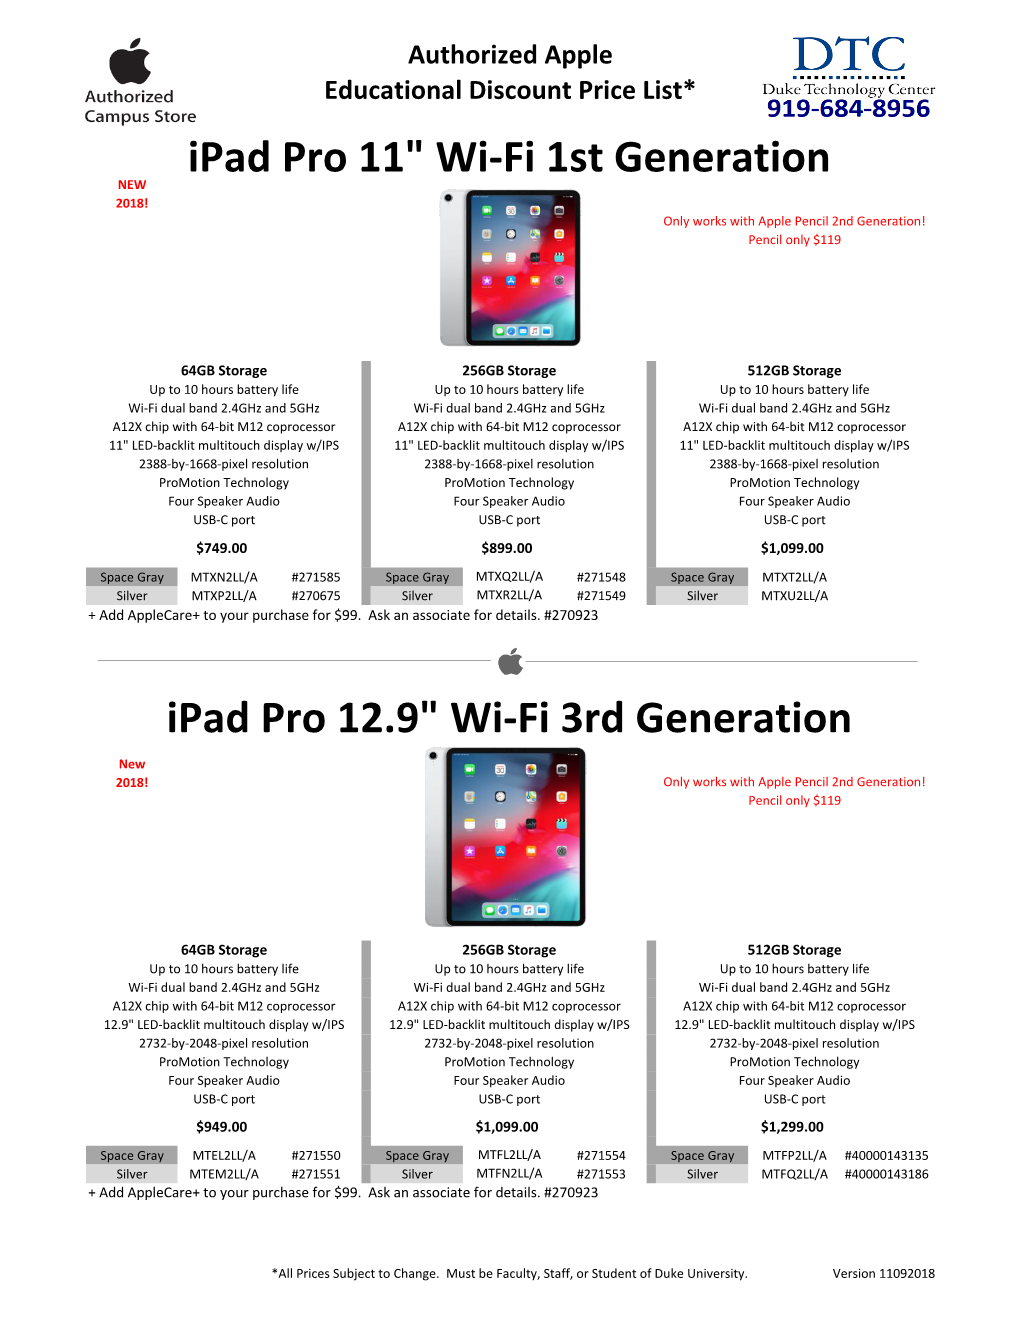 Ipad Pro 12.9" Wi-Fi 3Rd Generation Ipad